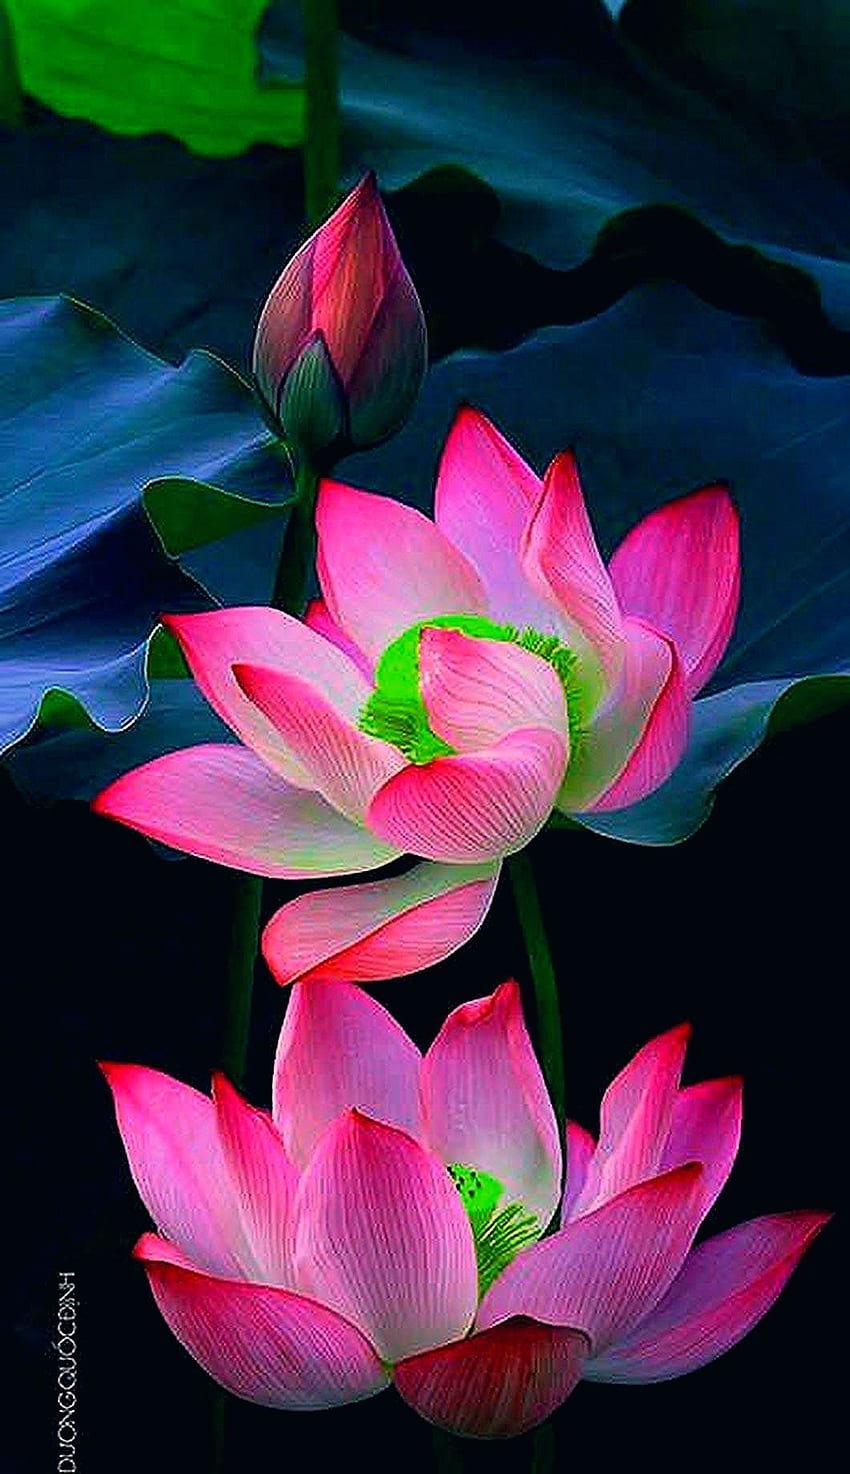 1920x1080px, 1080P Free download | Фотография. Lotus flower , Lotus ...